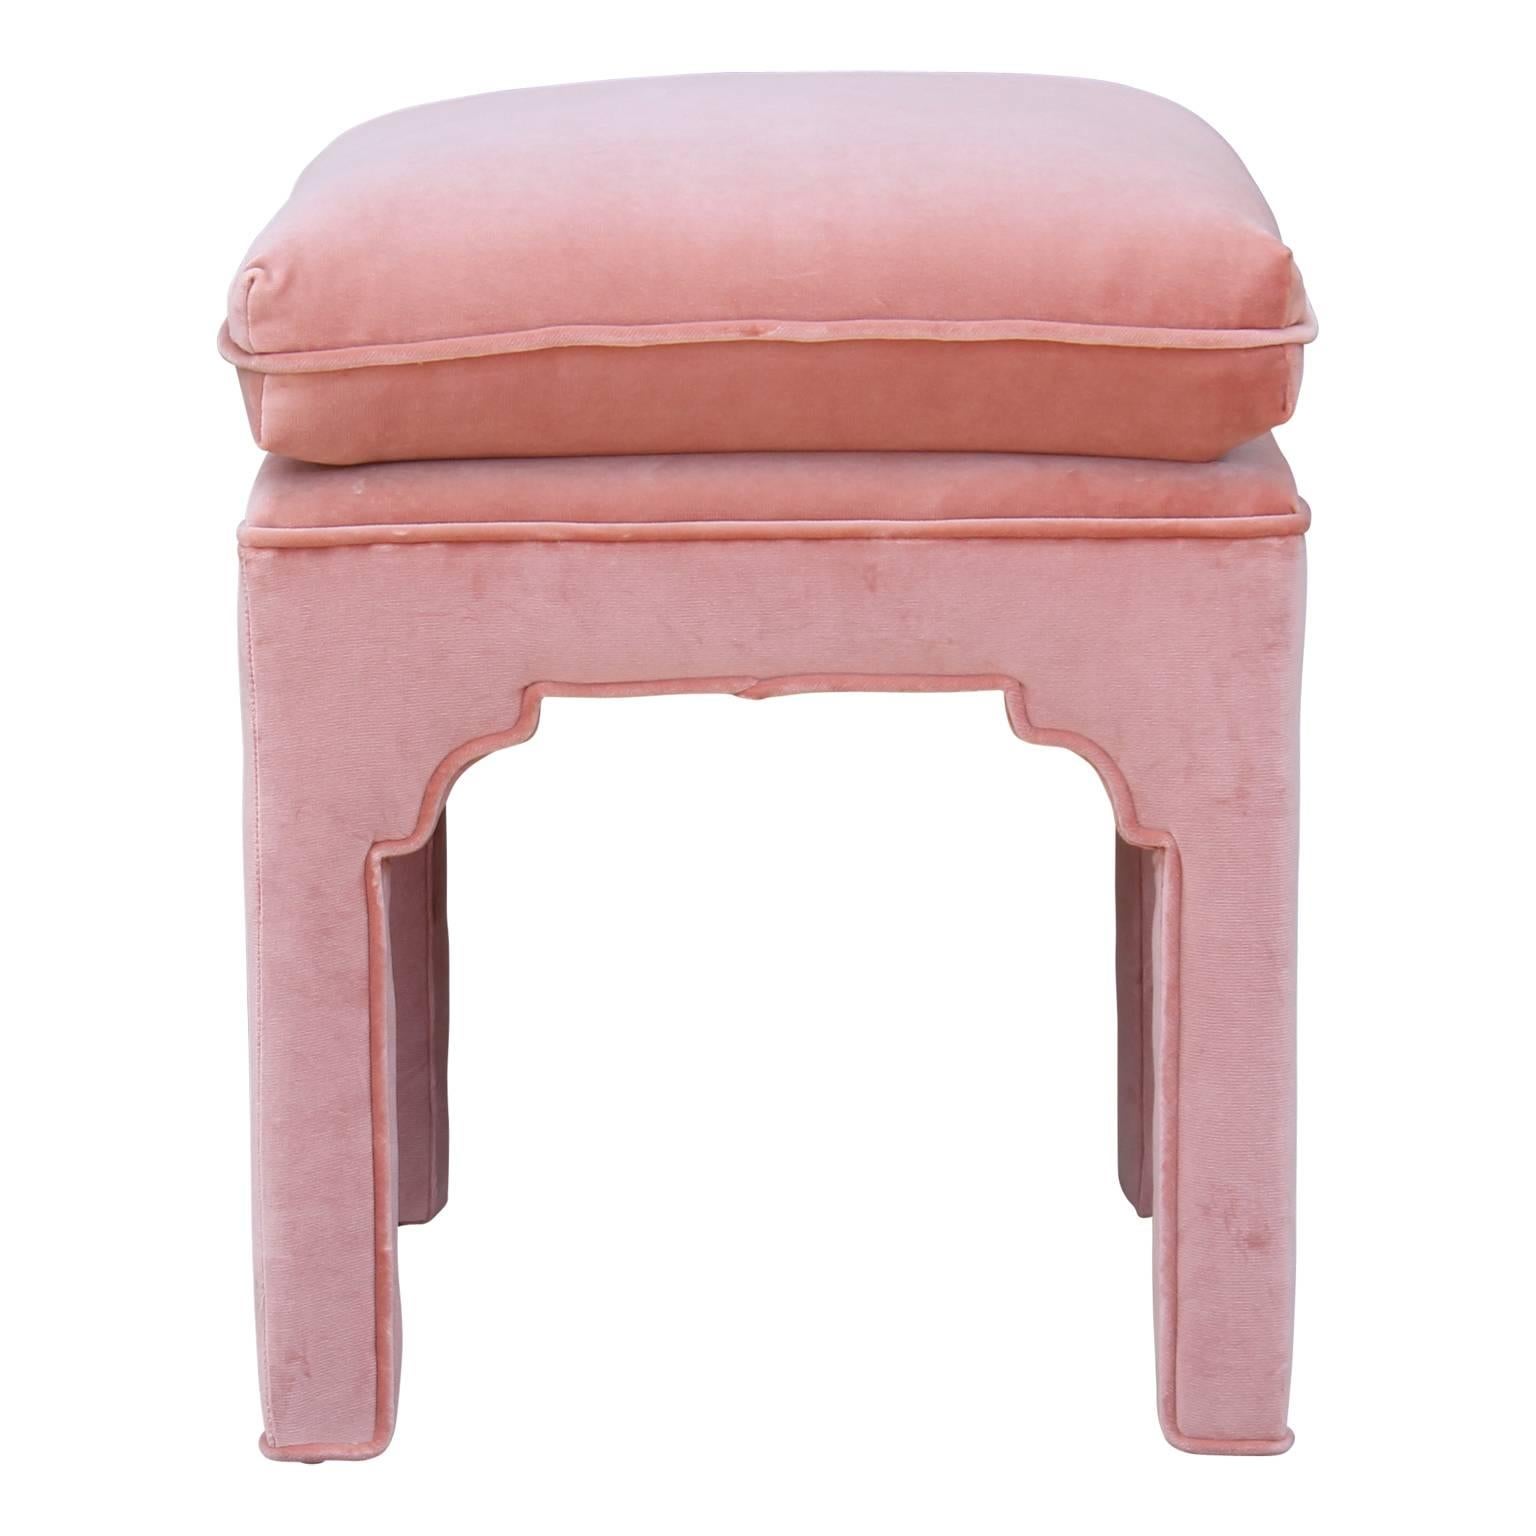 Hollywood Regency Pair of Modern Fully Upholstered Light Pink Velvet Footstools Ottomans